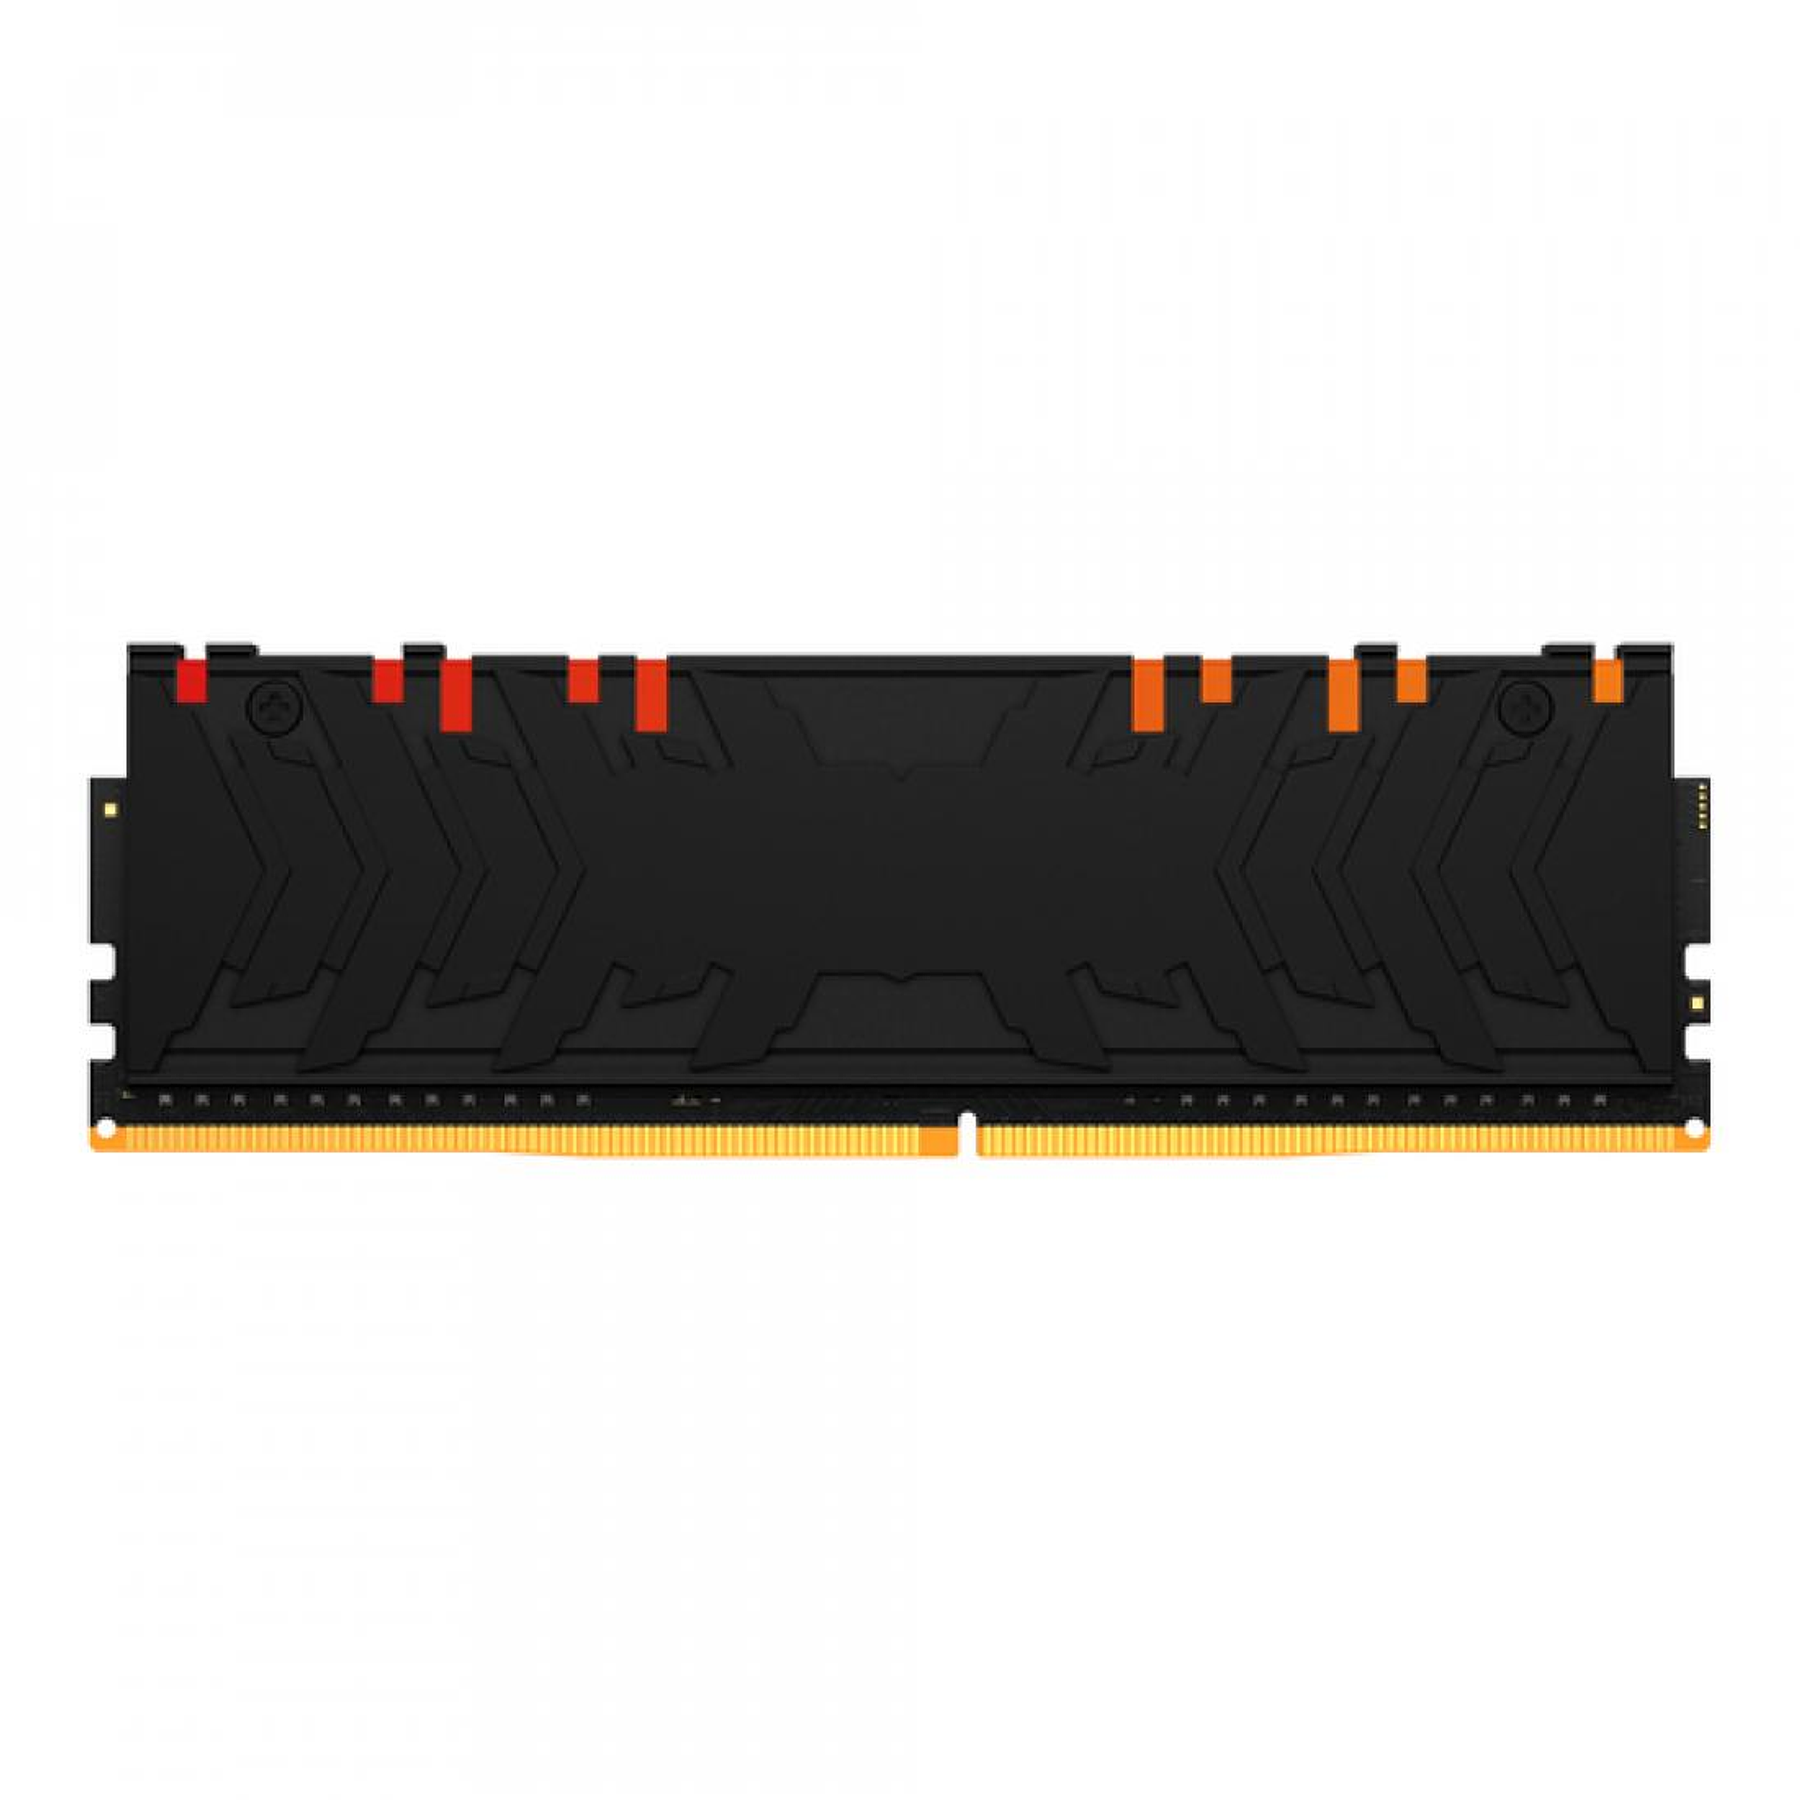 HyperX RAM 8GB 3000MHz DDR4 DIMM Predator RGB